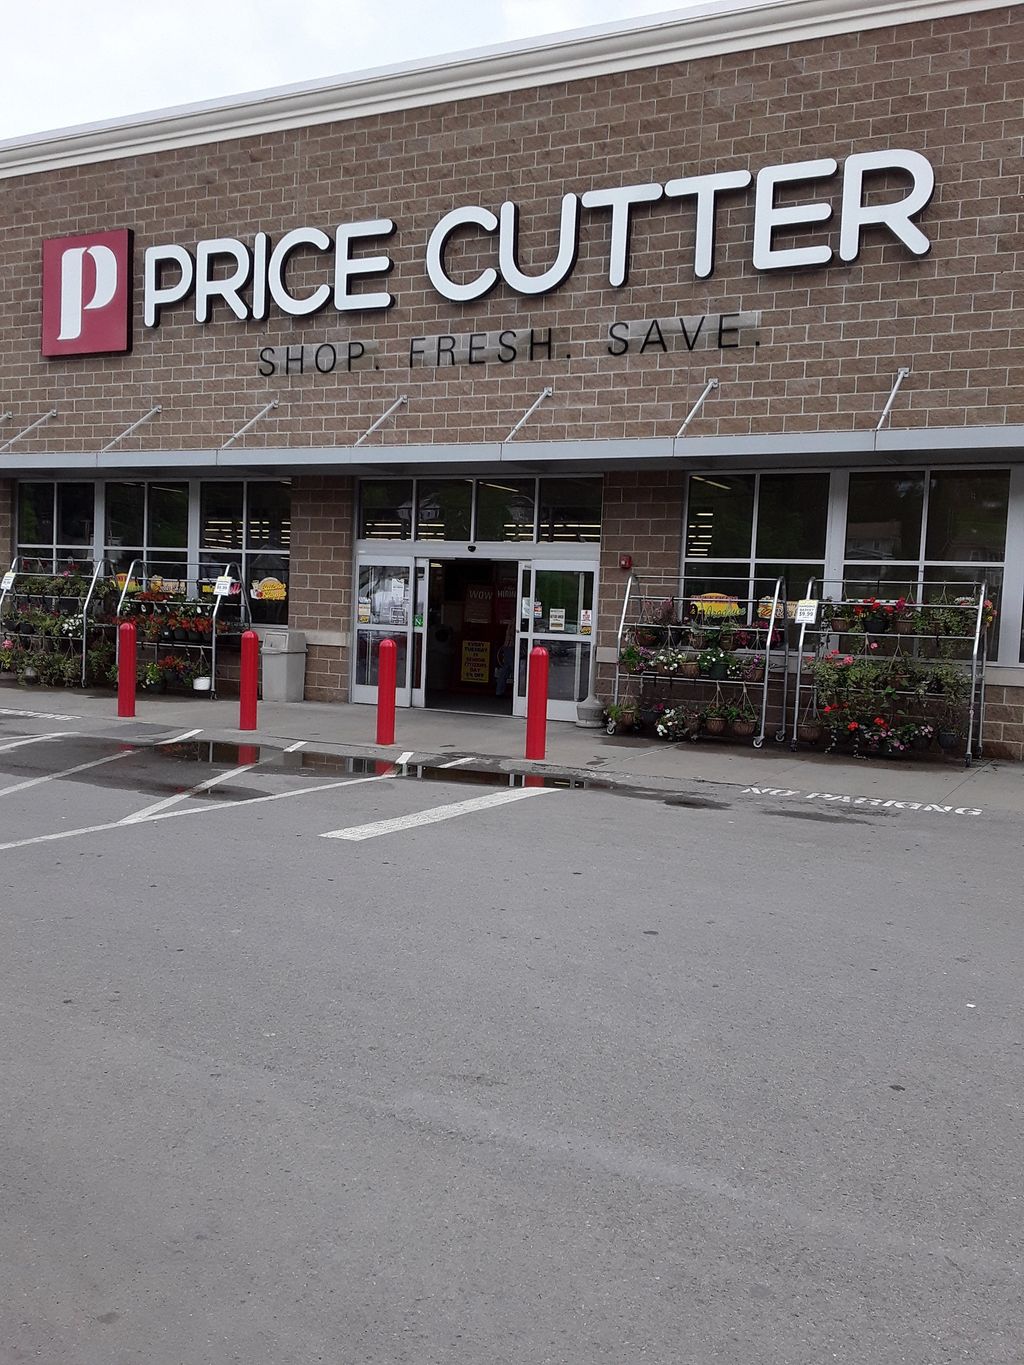 Price-Cutter